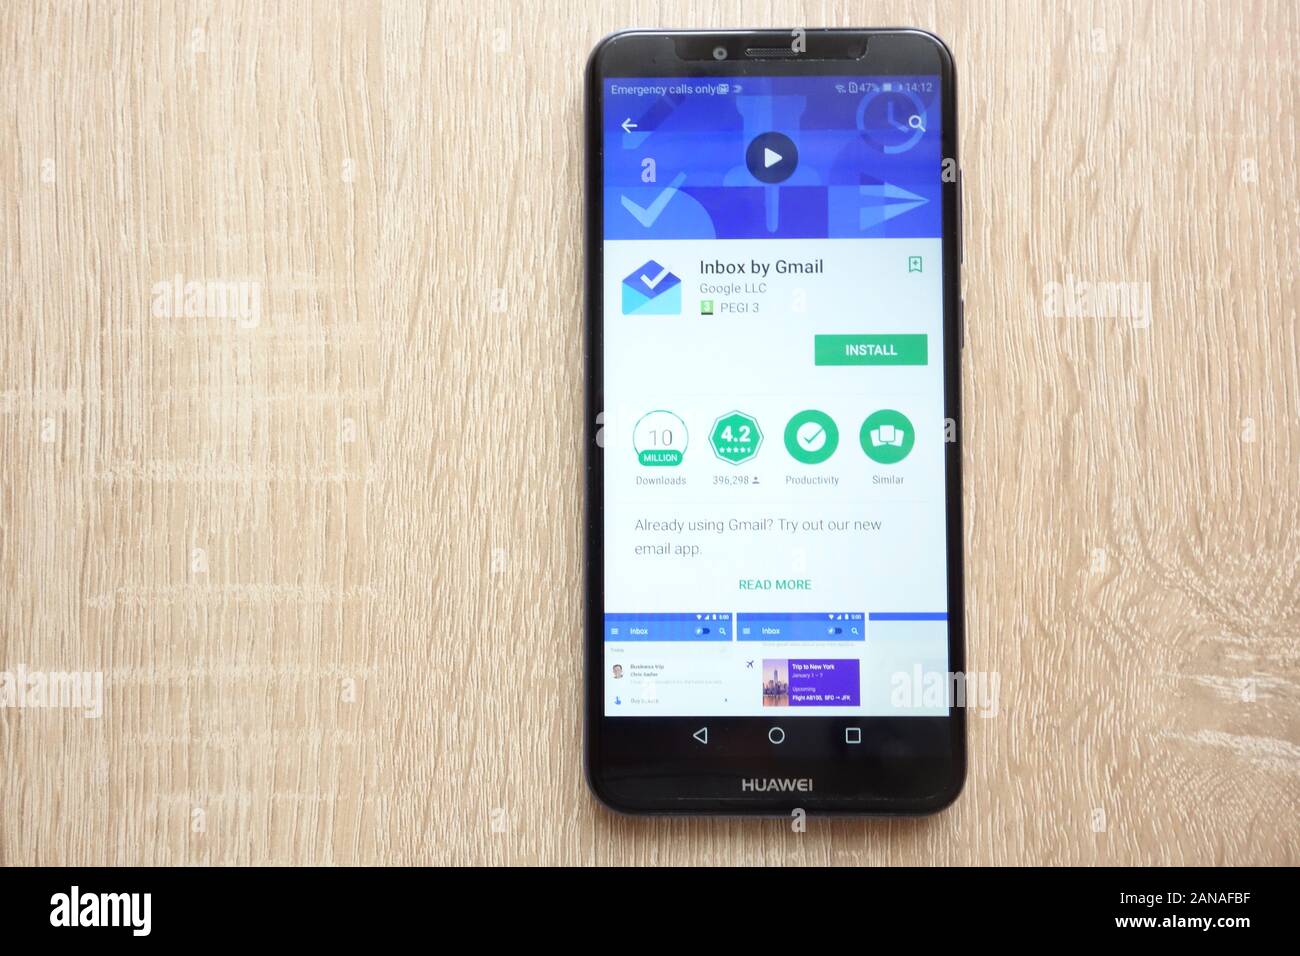 Par la boîte de réception Gmail app sur Google Play Store site web affiché sur smartphone Huawei Y6 2018 Banque D'Images